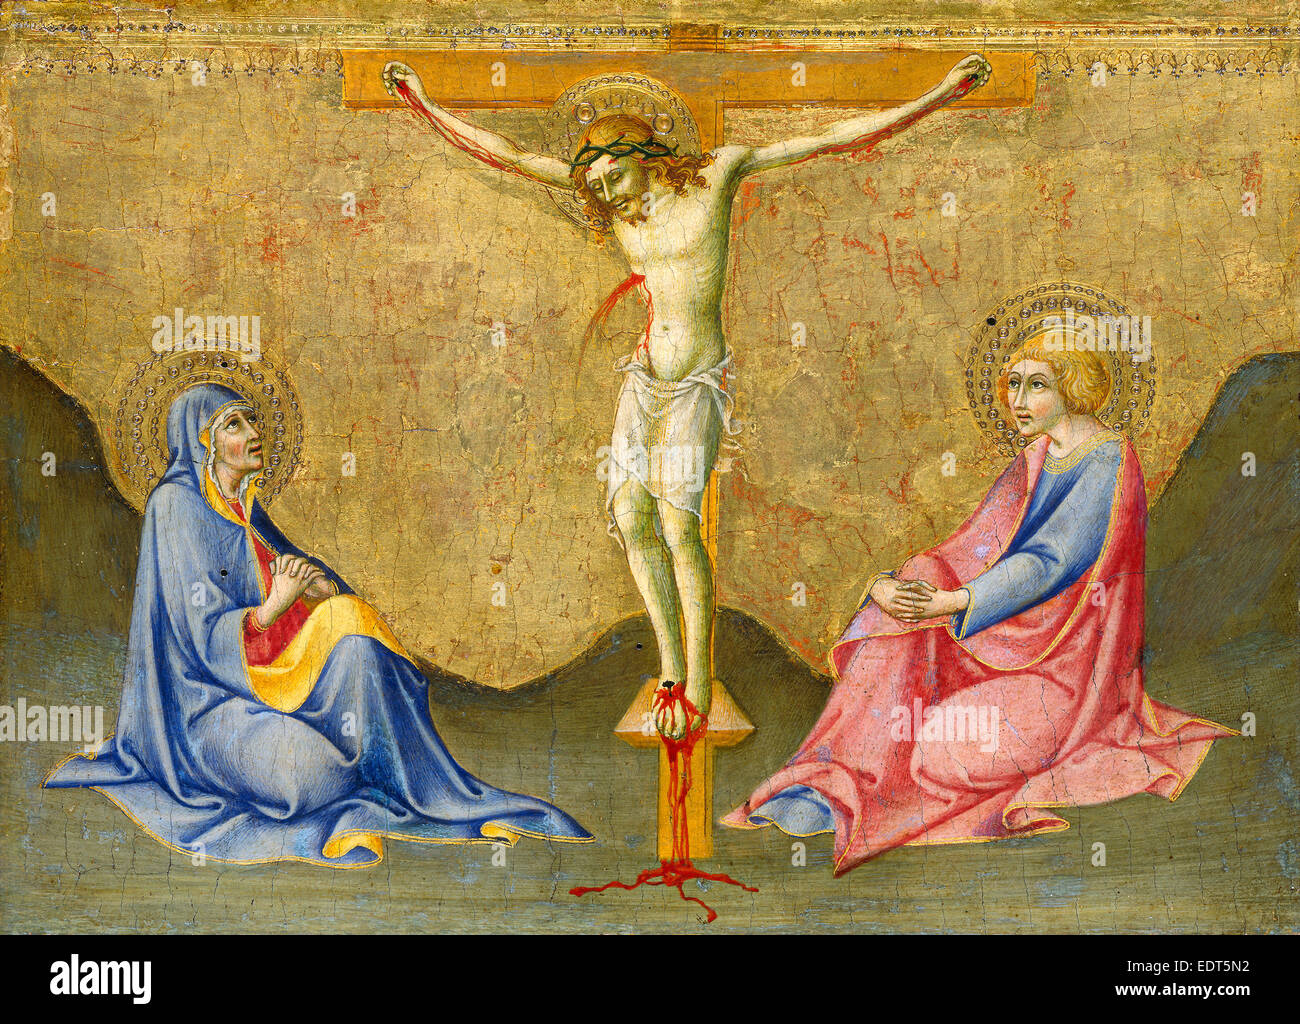 Sano di Pietro, The Crucifixion, Italian, 1405-1481, c. 1445-1450, tempera on panel Stock Photo